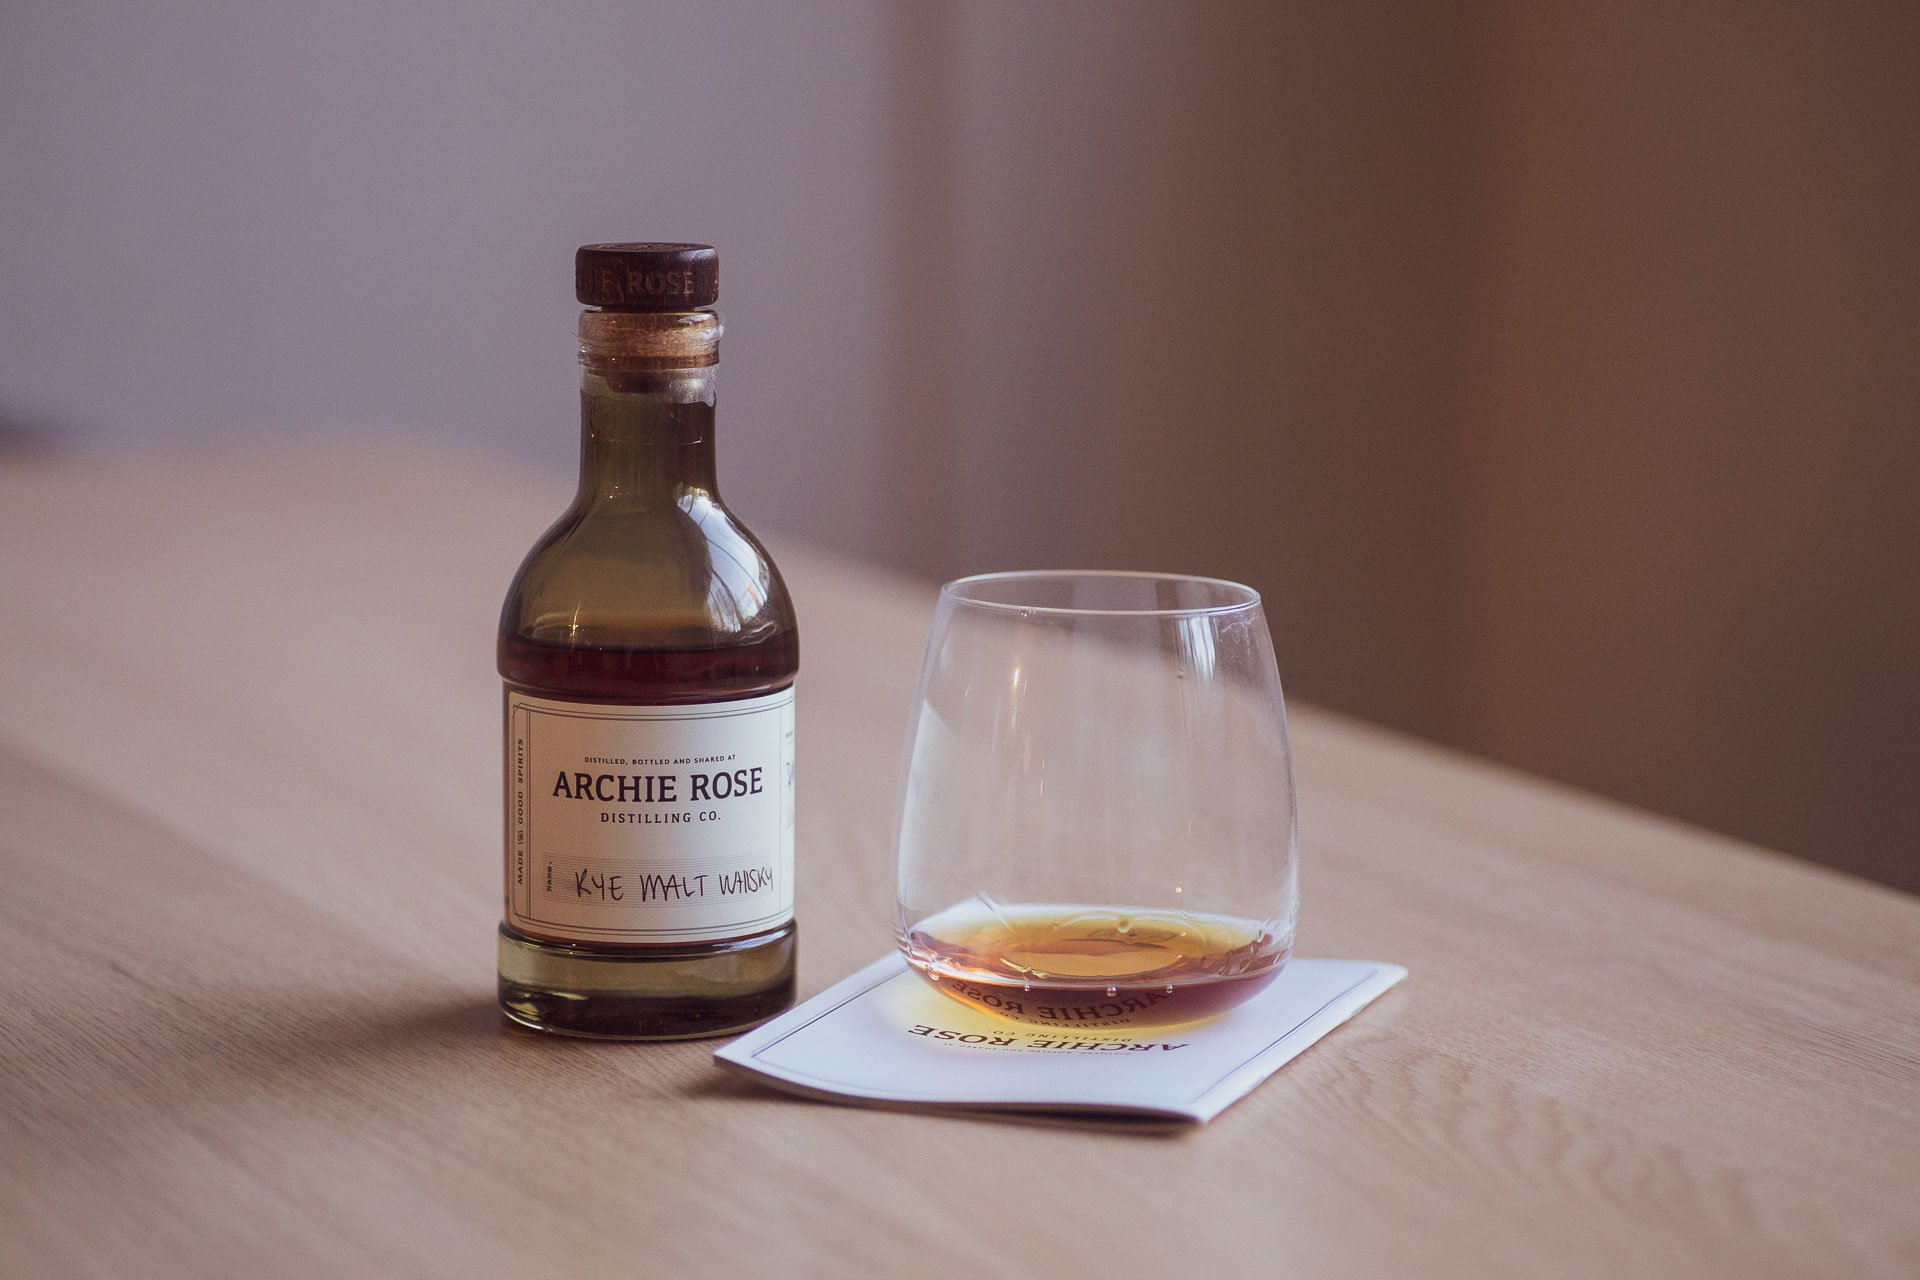 Who Makes The Best Rye Whisky: Scotland VS Australia - Archie Rose Rye Malt